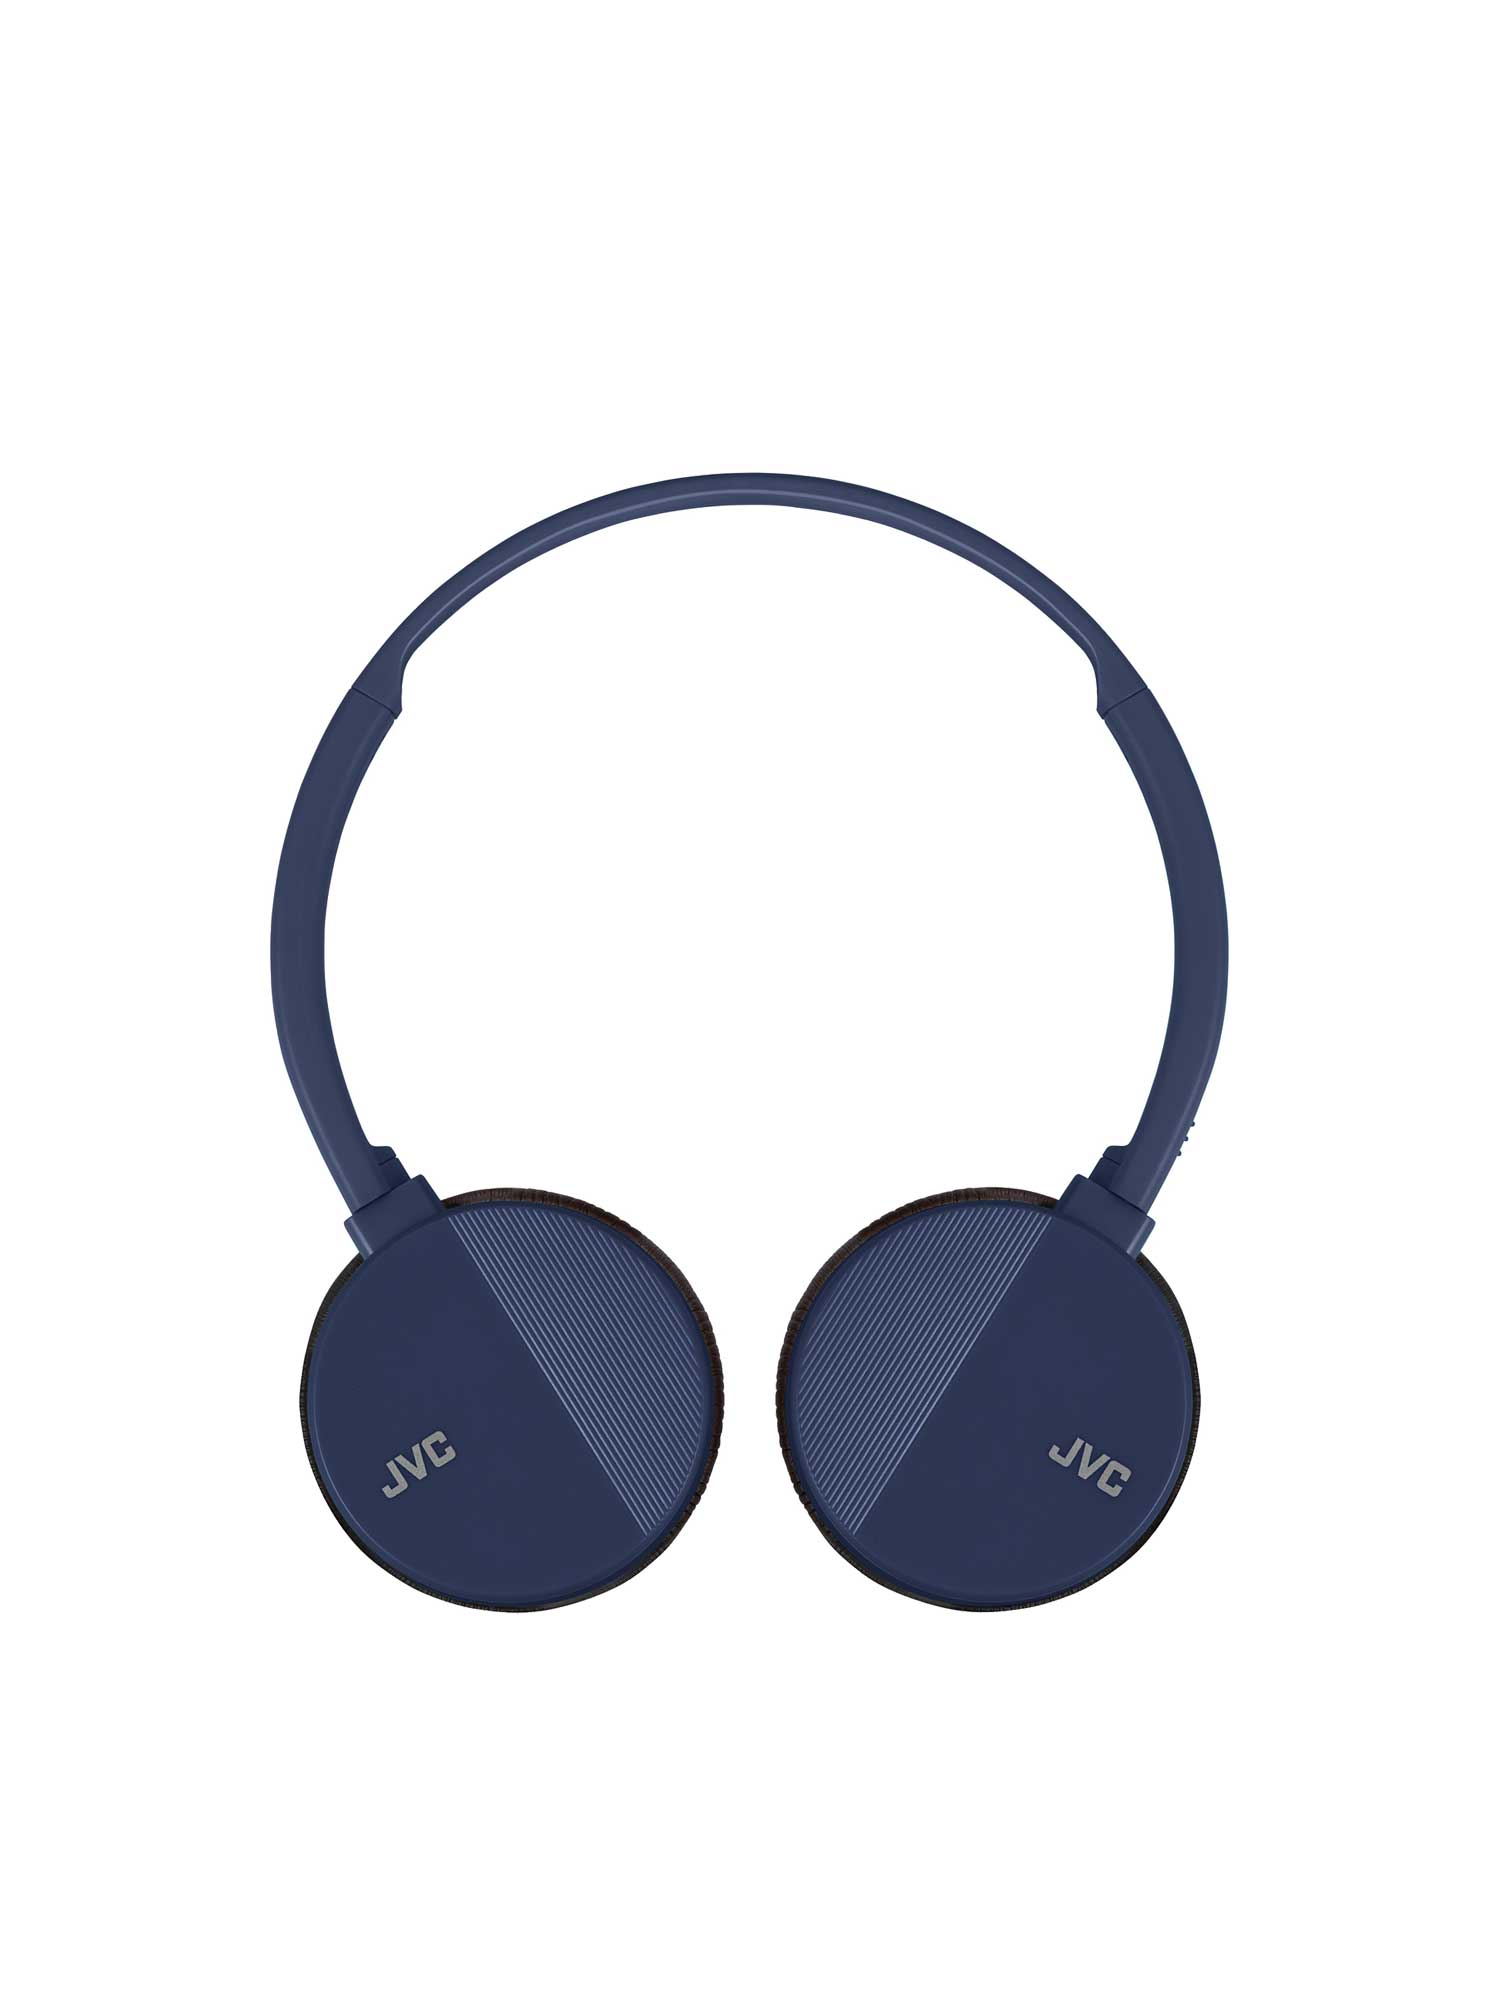 HA-S24W-A in blue on-ear wireless bluetooth headphones swivel design